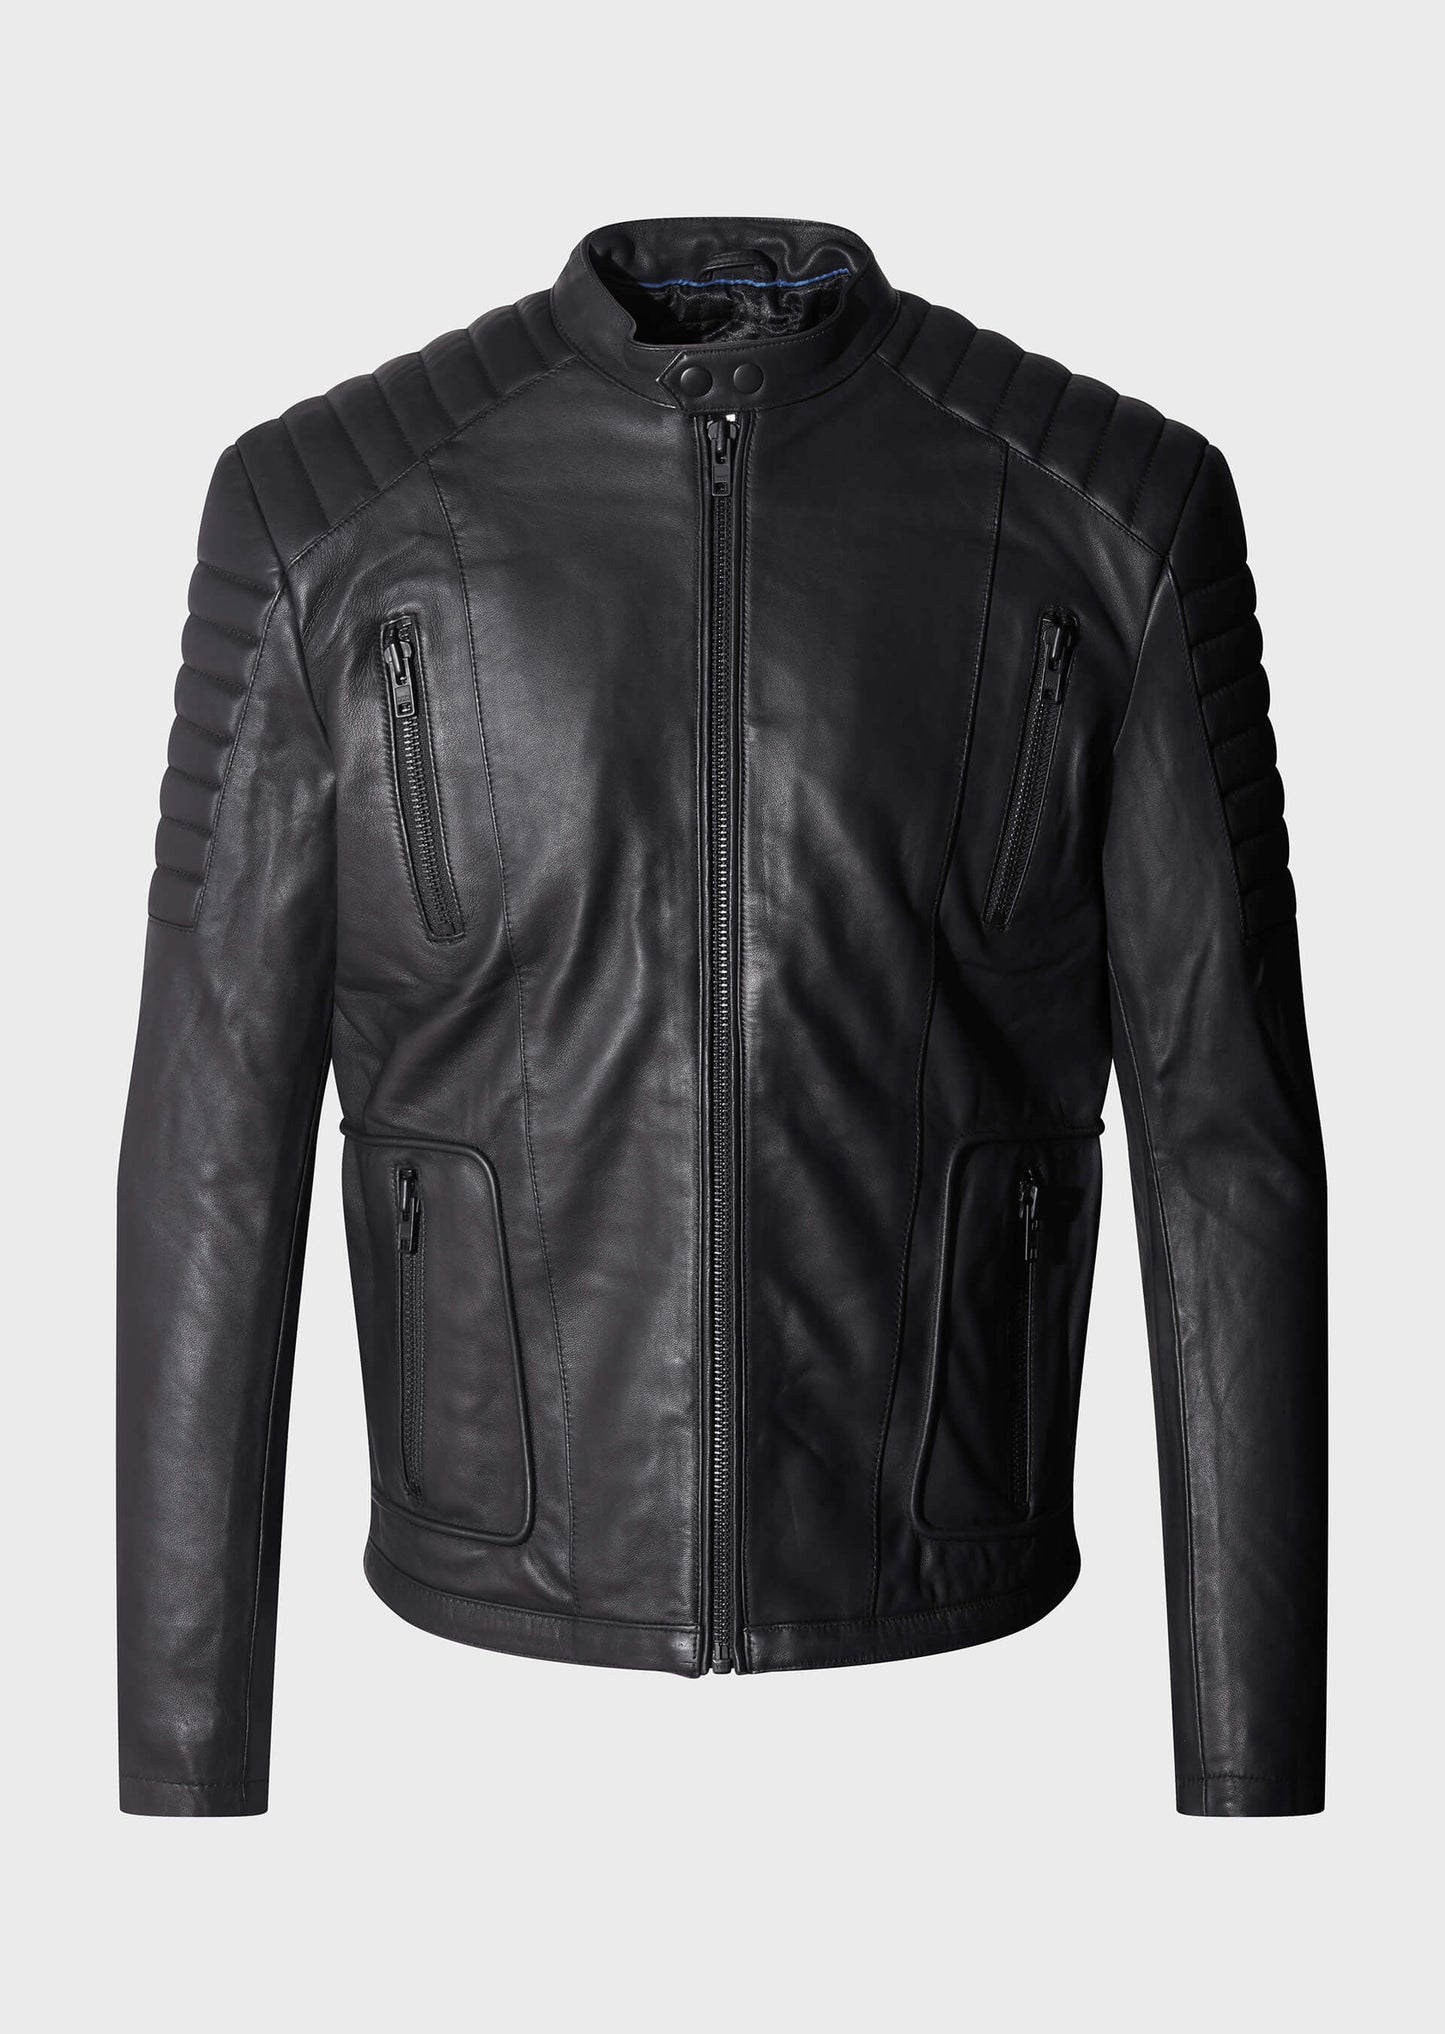 Tracks Black Leather Jacket